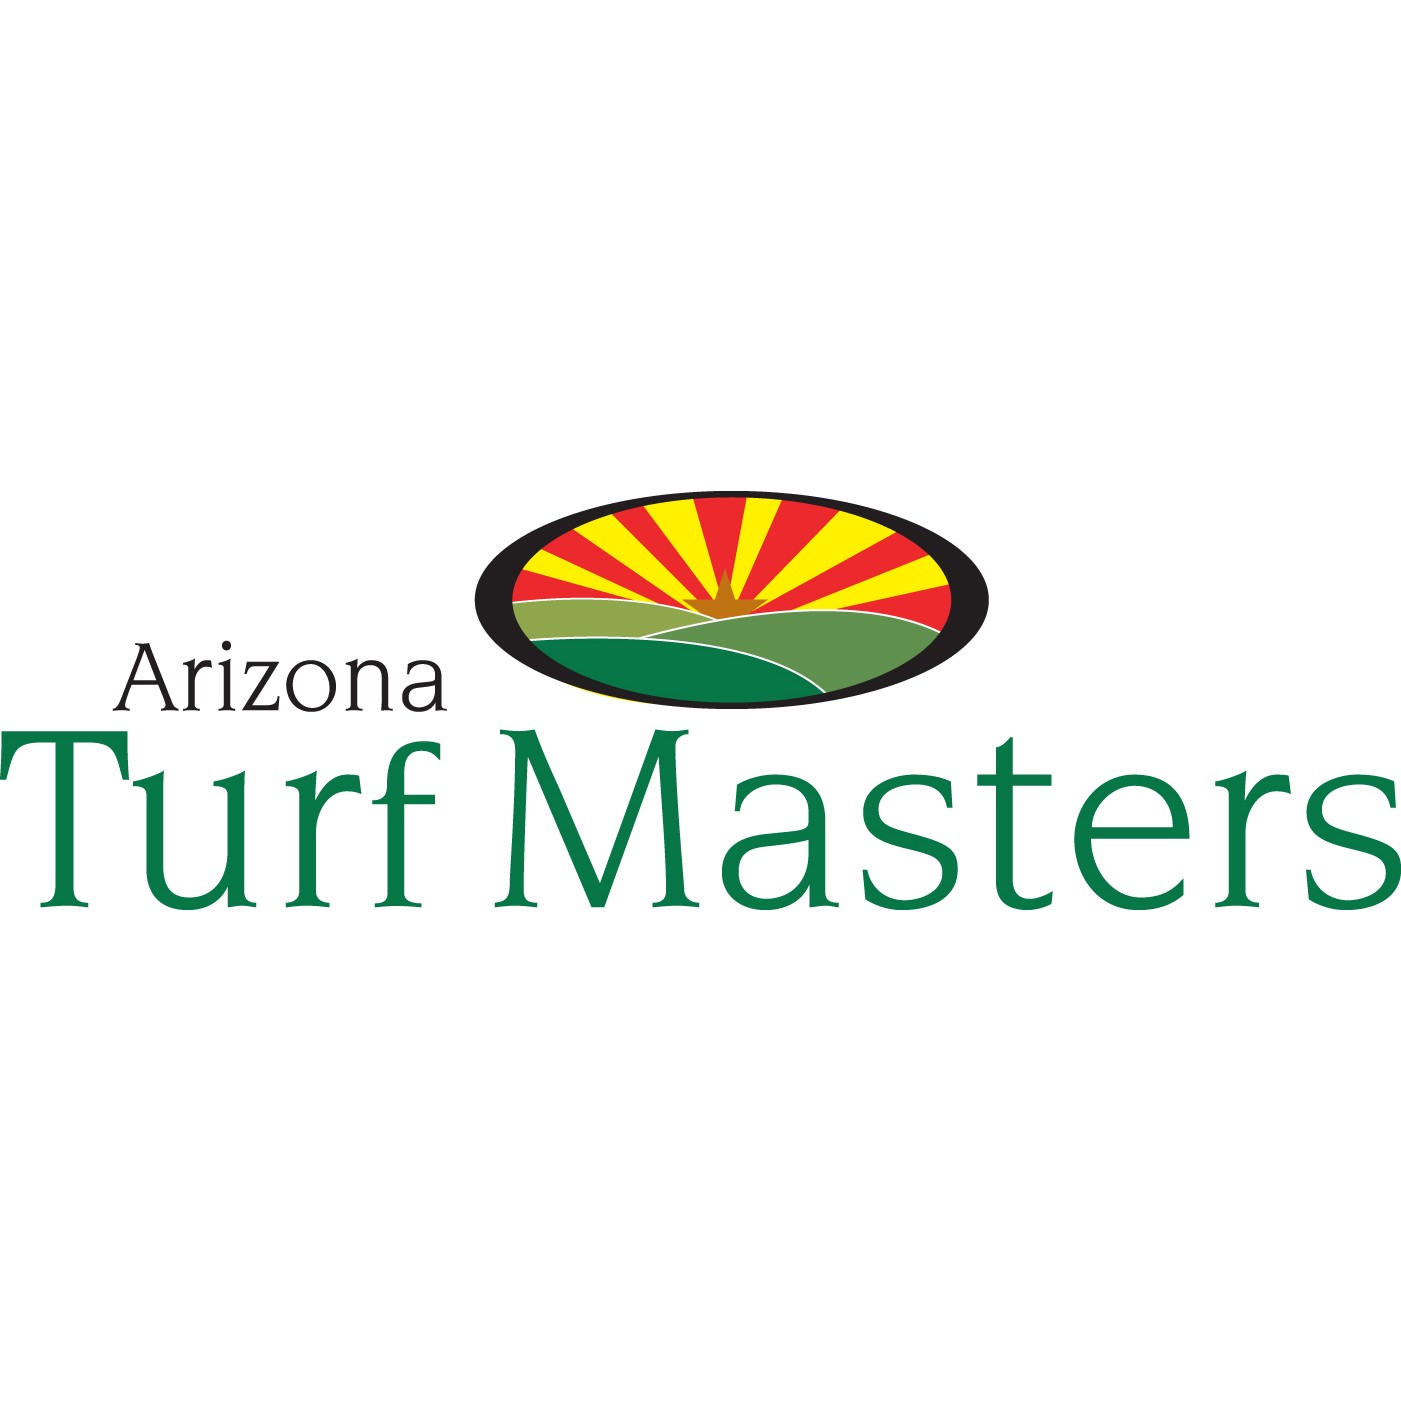 Arizona Turf Masters